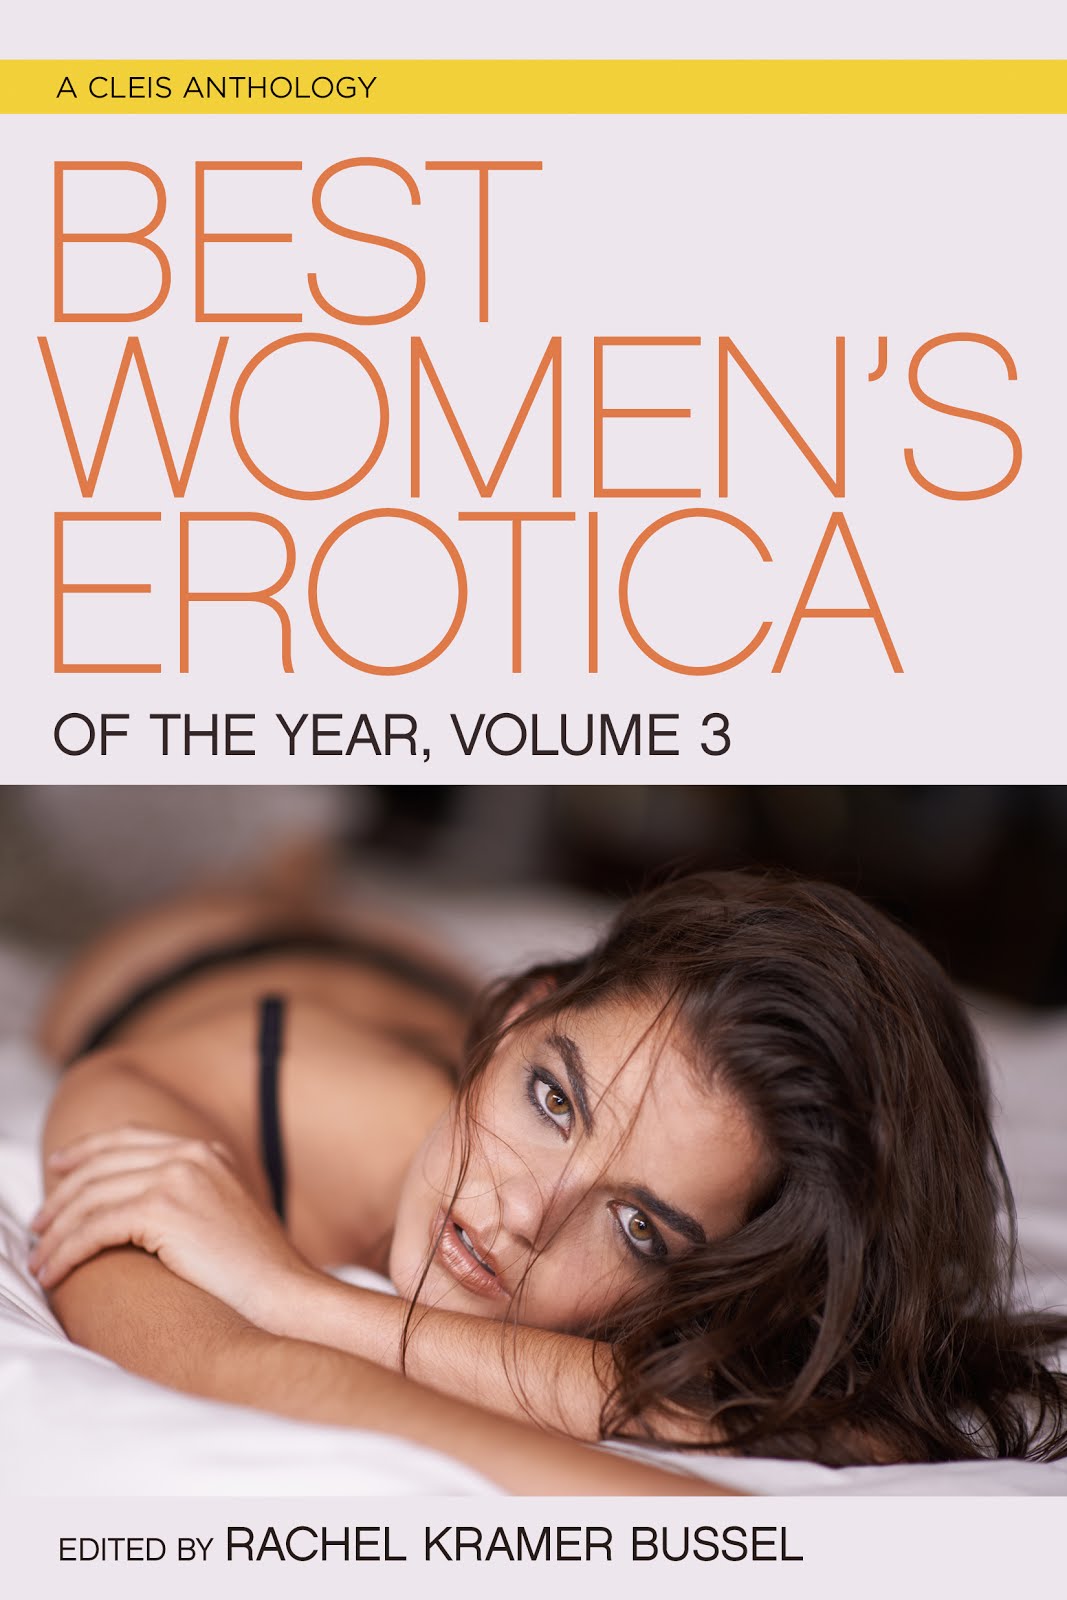 Best Women's Erotica Volume 3